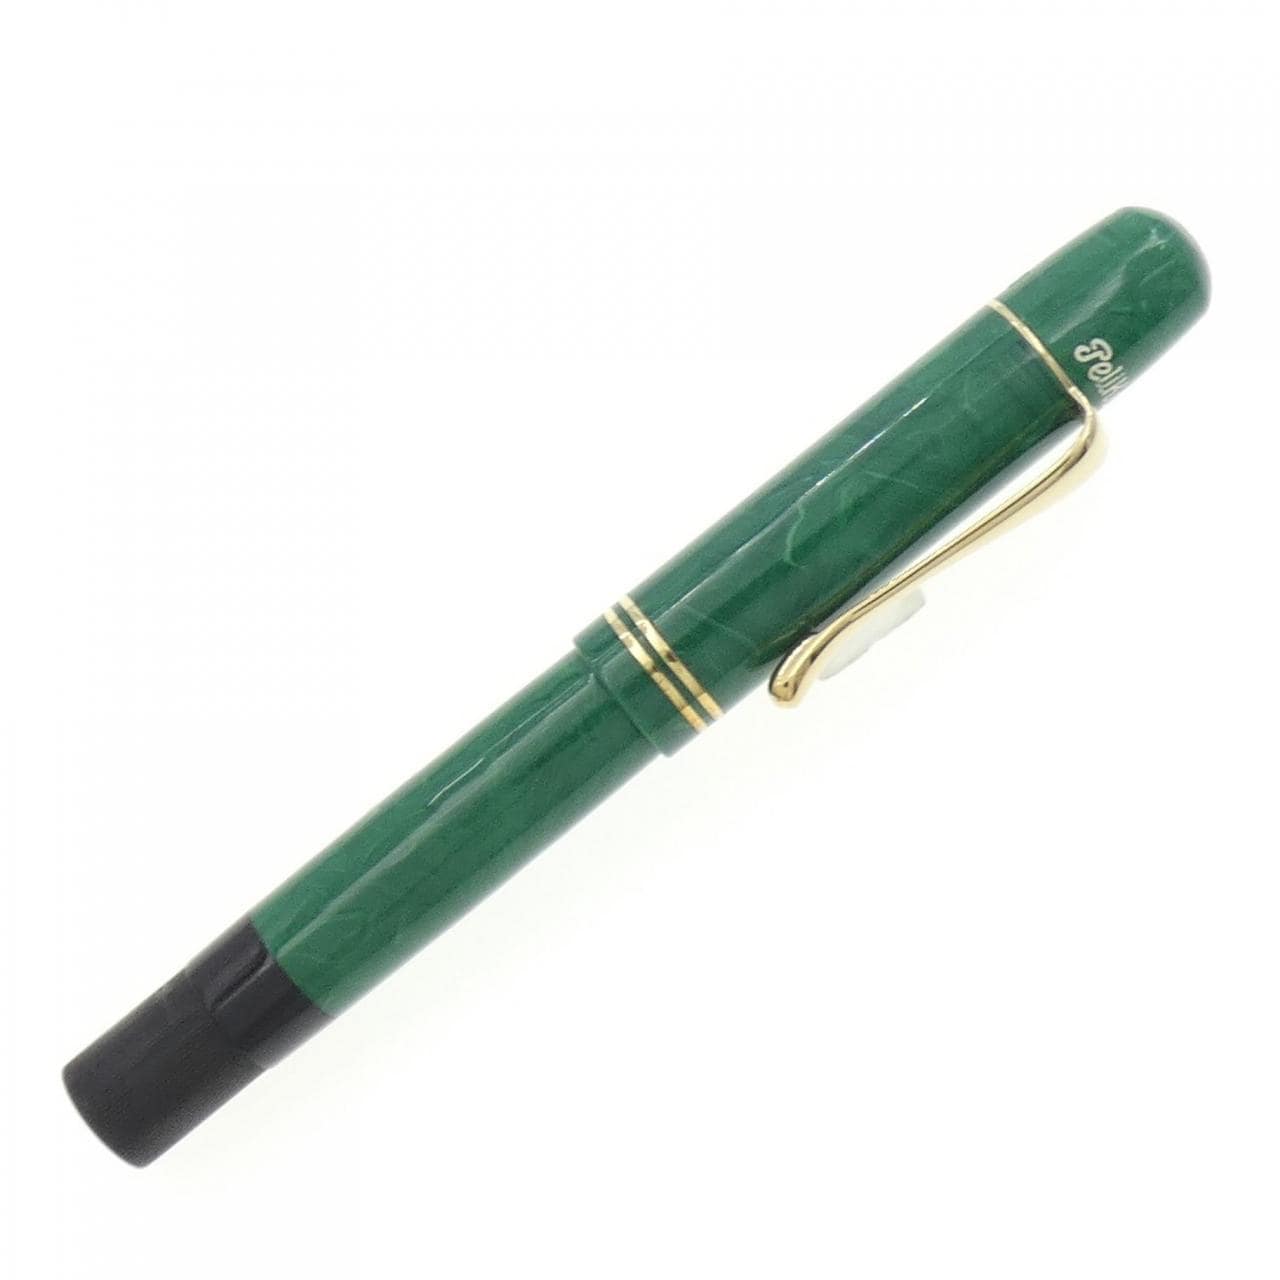 鵜鶘限量版1935綠色鋼筆